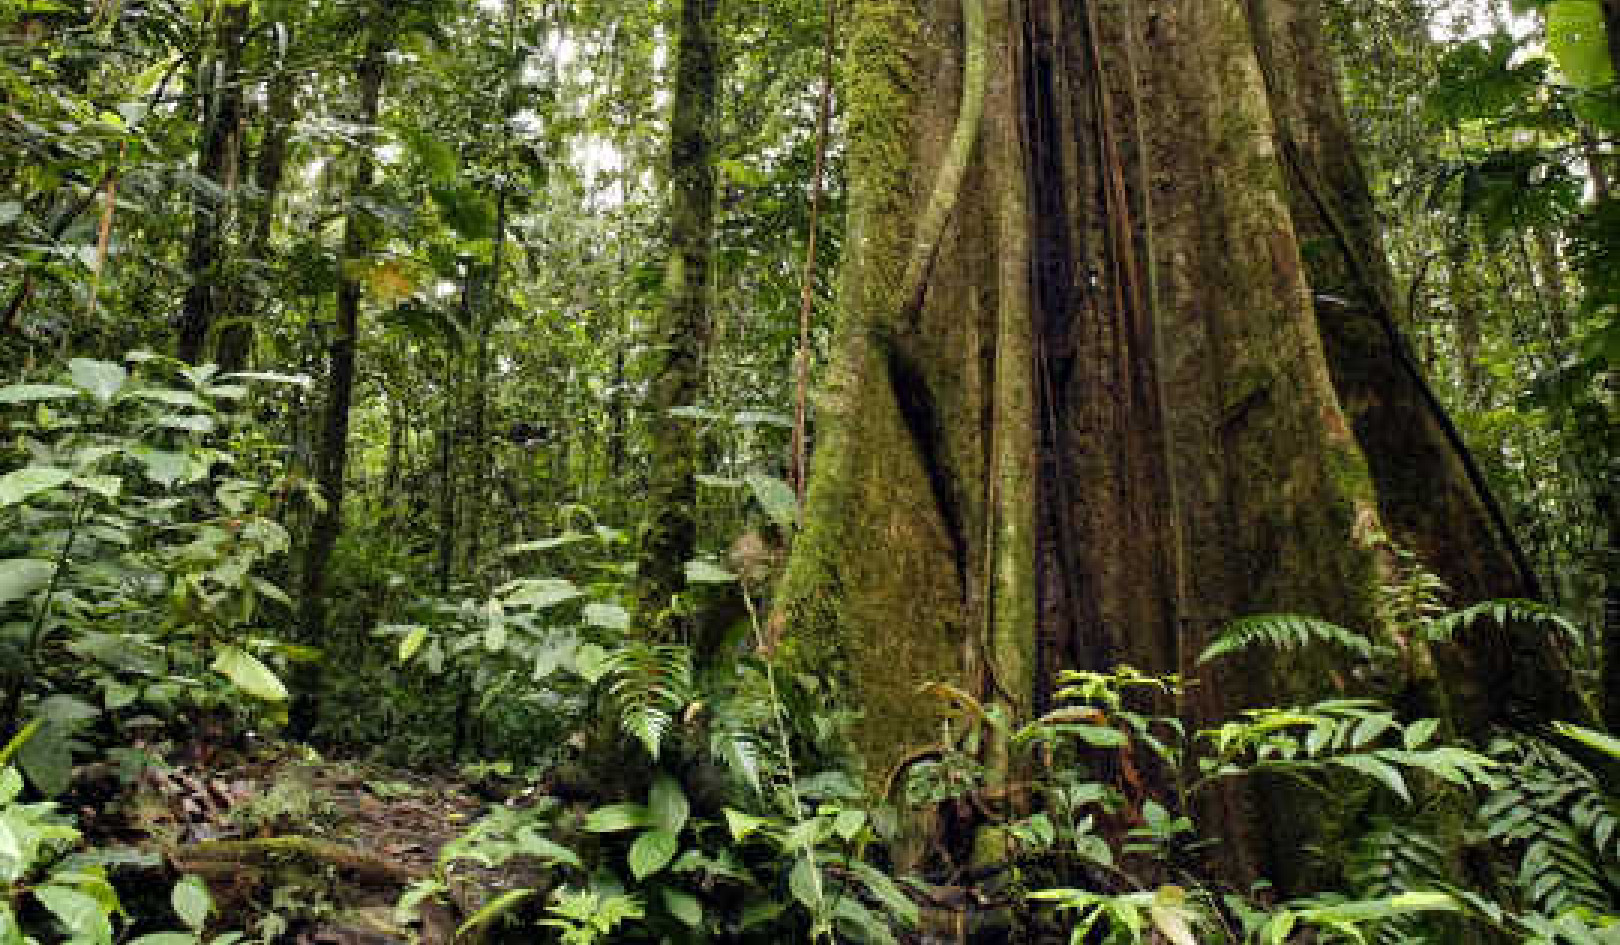 Staat het Amazone-regenwoud op instorten?